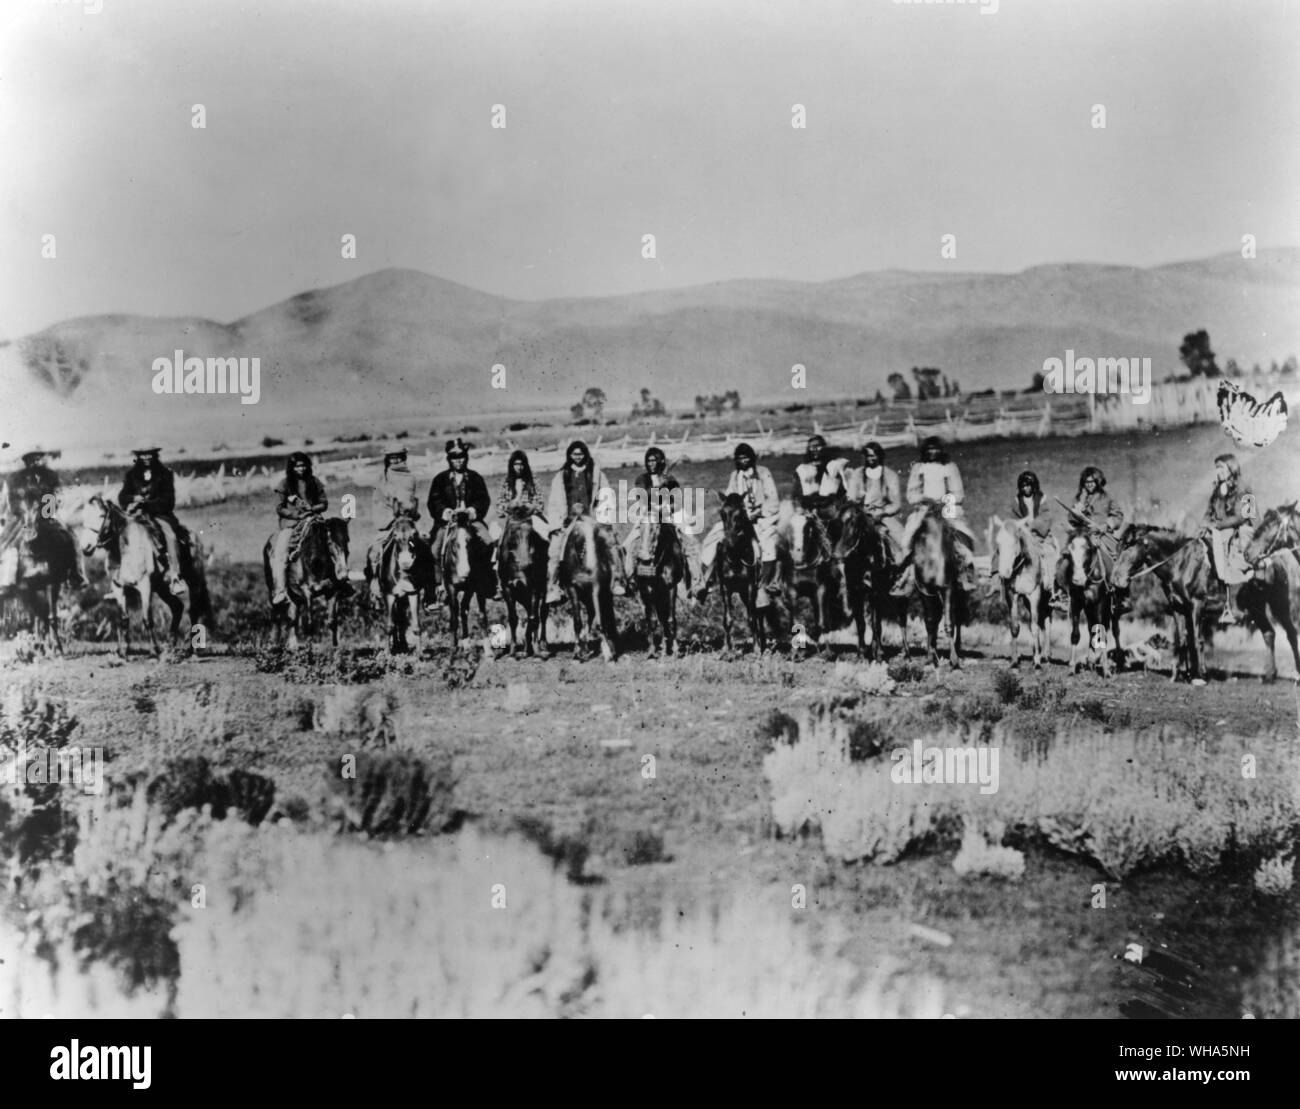 Gruppe von Ute Indianer auf dem Kriegspfad. Die Ute Stamm war Teil der Shoshone Nation, die von Colorado und Utah South, New Mexiko und Arizona reichten. Feindliche Indianer hielt US-Army Einheiten in der Nähe der Baustelle fast ununterbrochen, aber Central Pacific Rail Schichten wurden nicht beunruhigt. Ein J Russell Foto. c 1869 Stockfoto